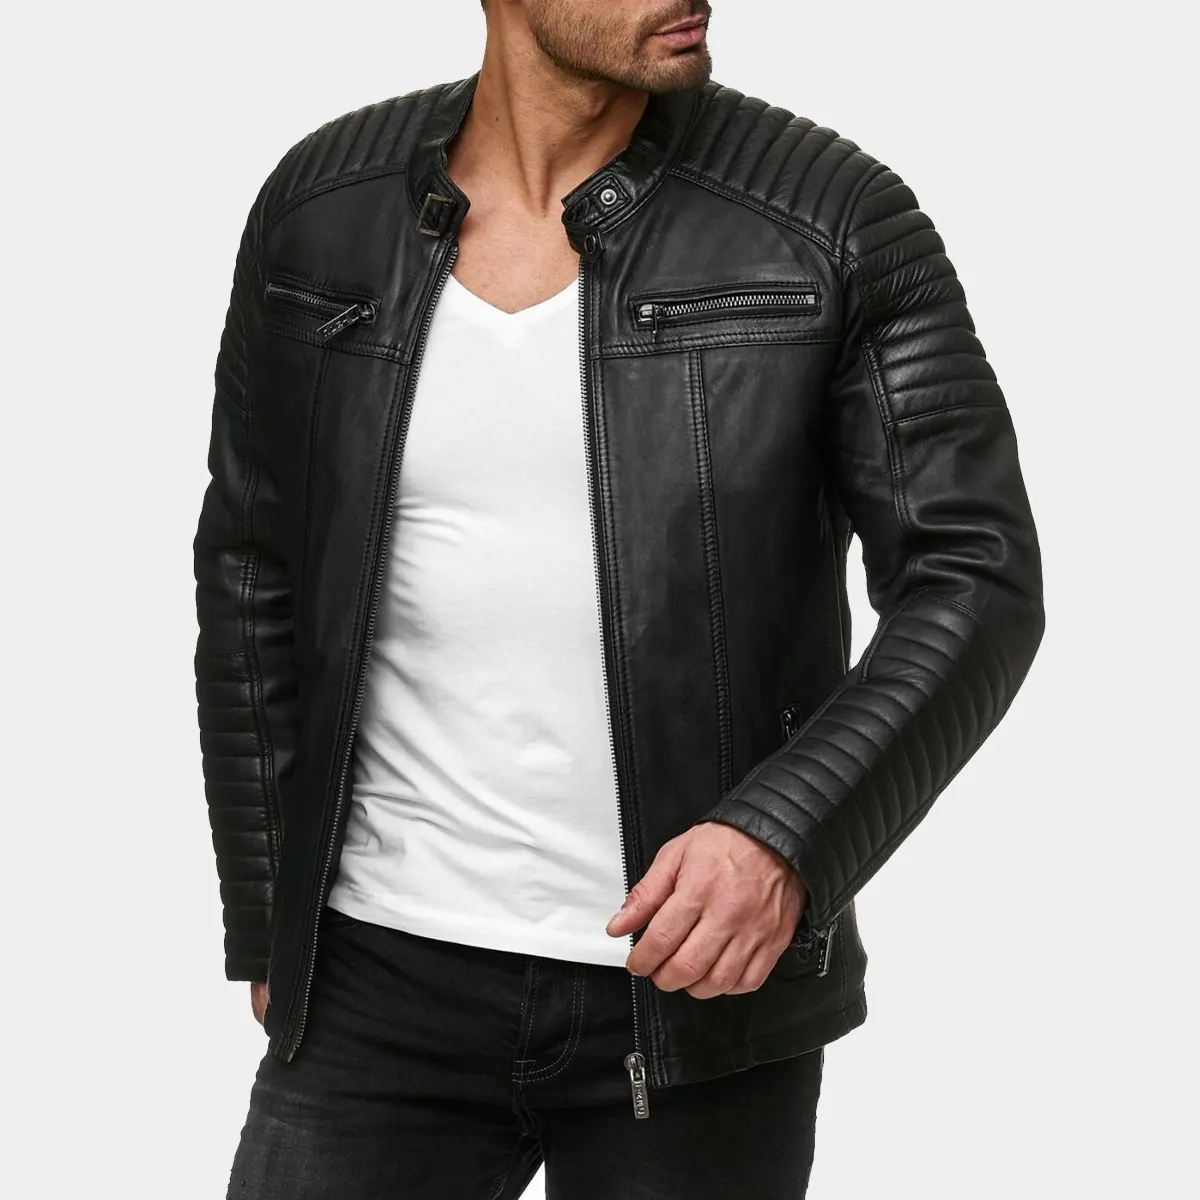 men’s biker jacket – transitional jacket